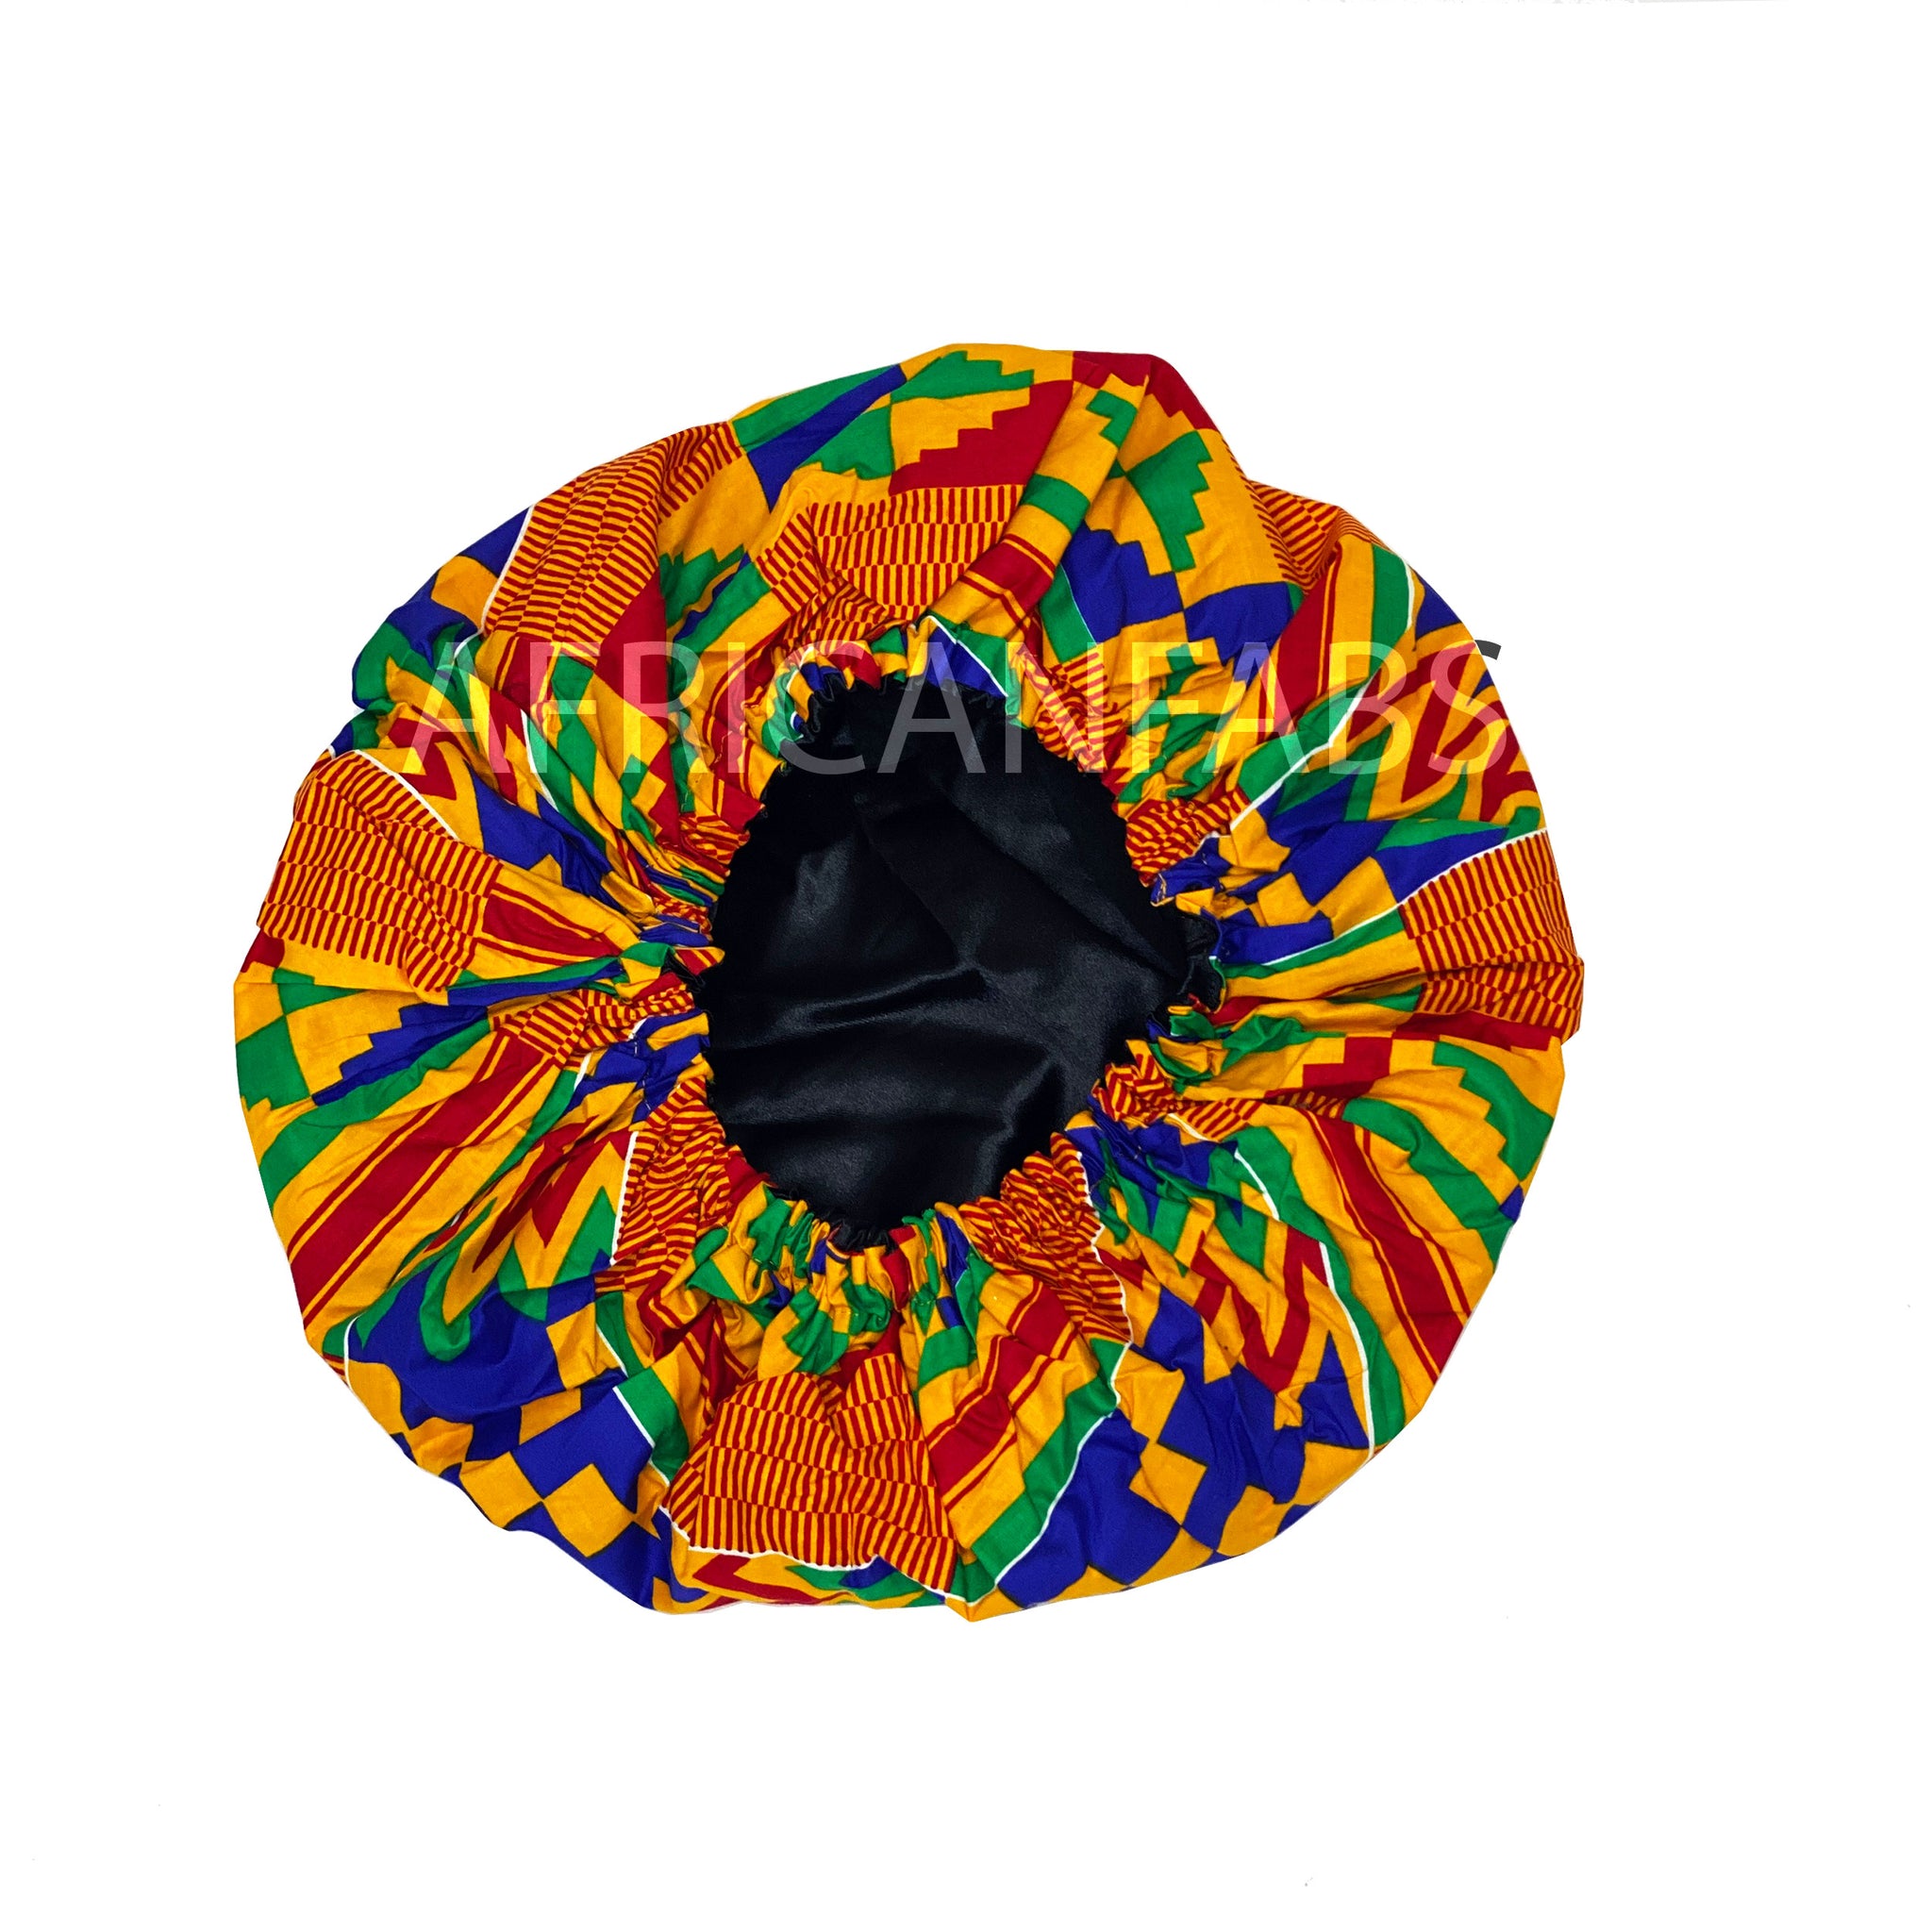 Bonnet de nuit à imprimé africain - Orange / bleu Kente ( Coton